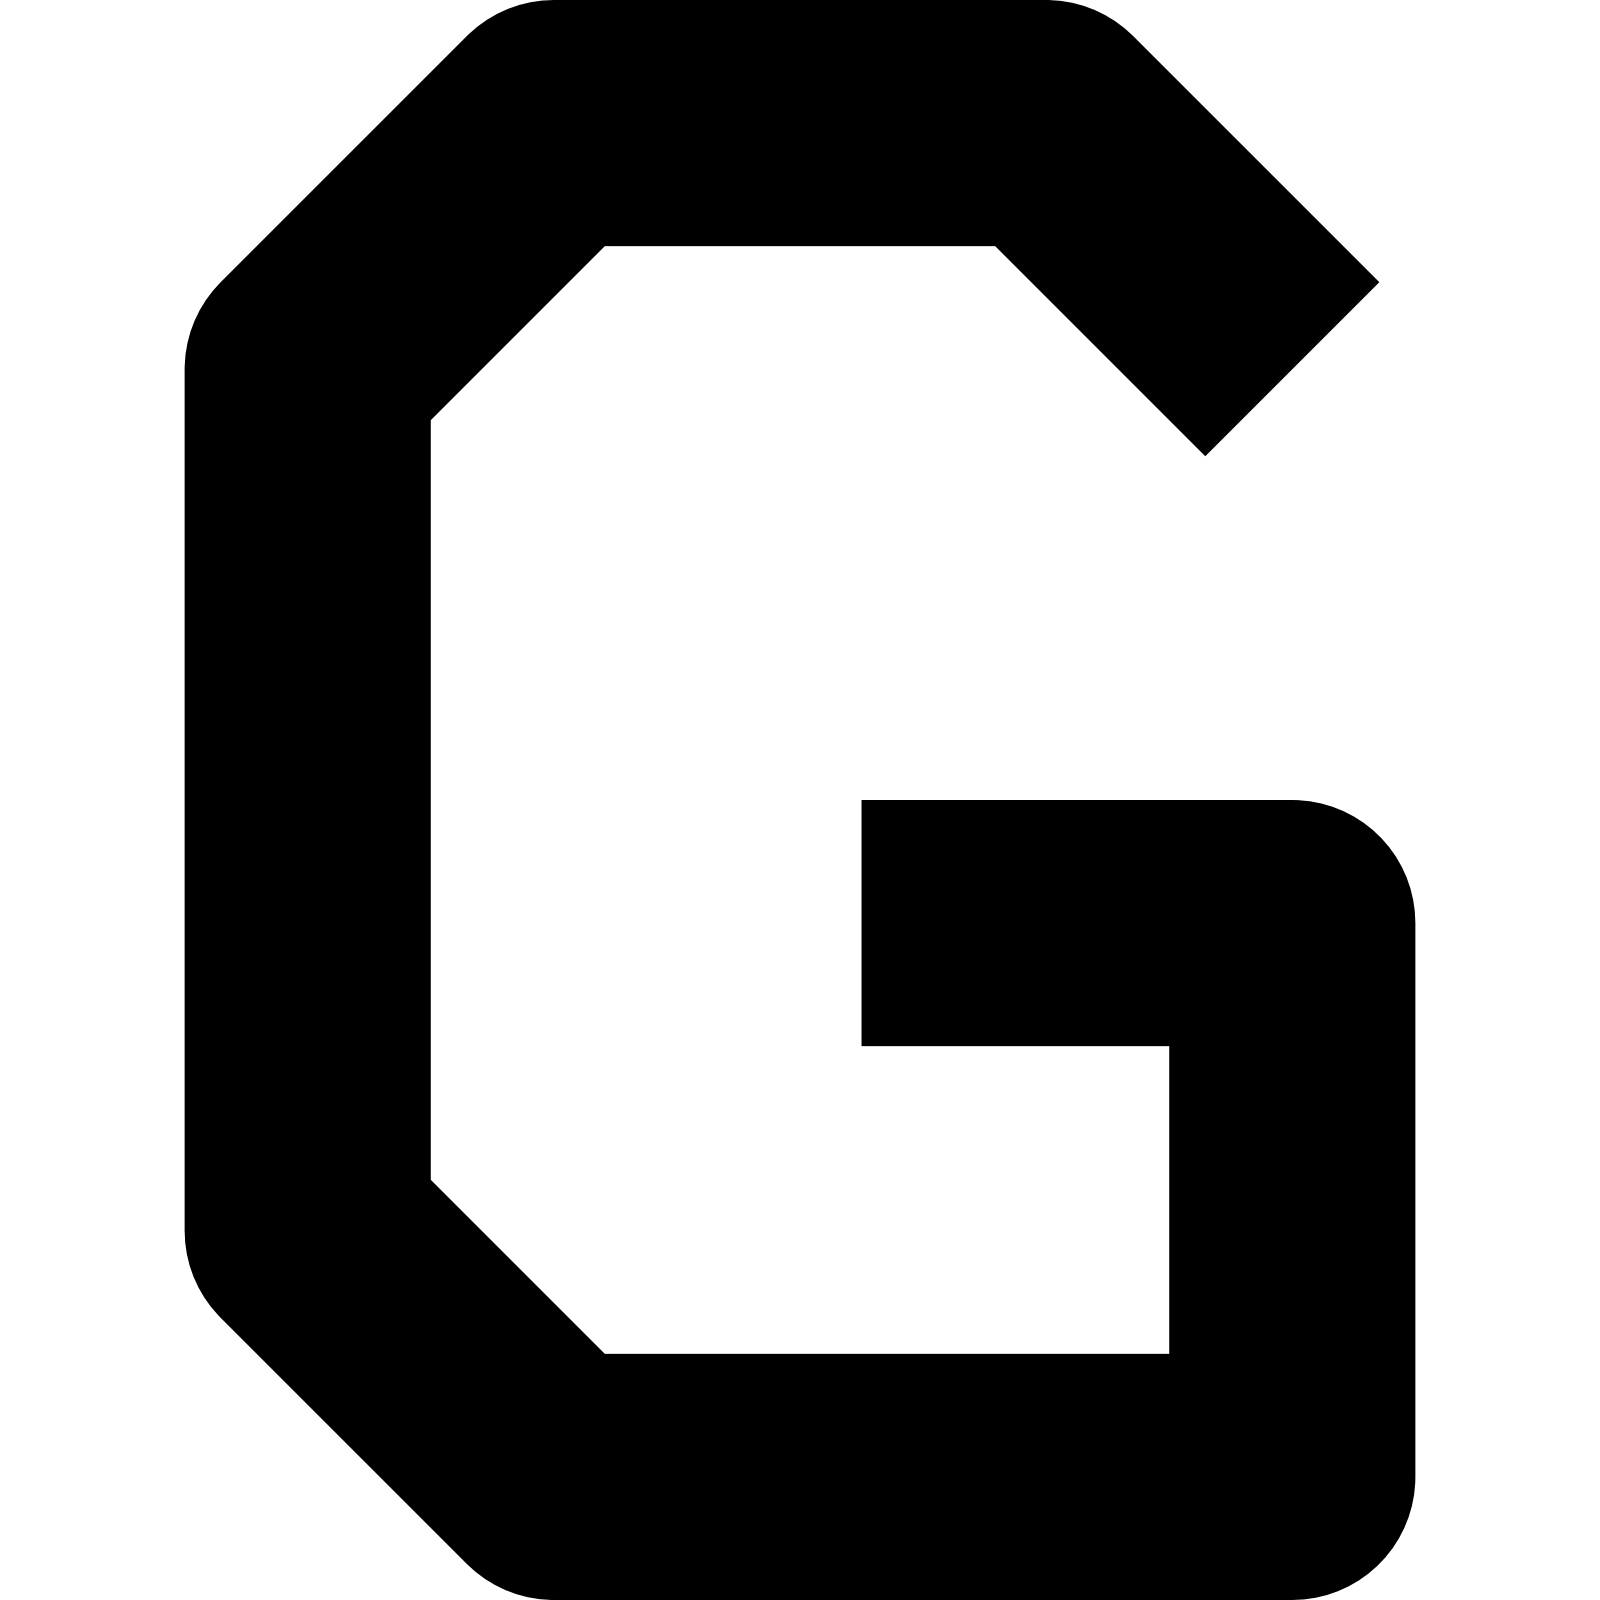 文字G